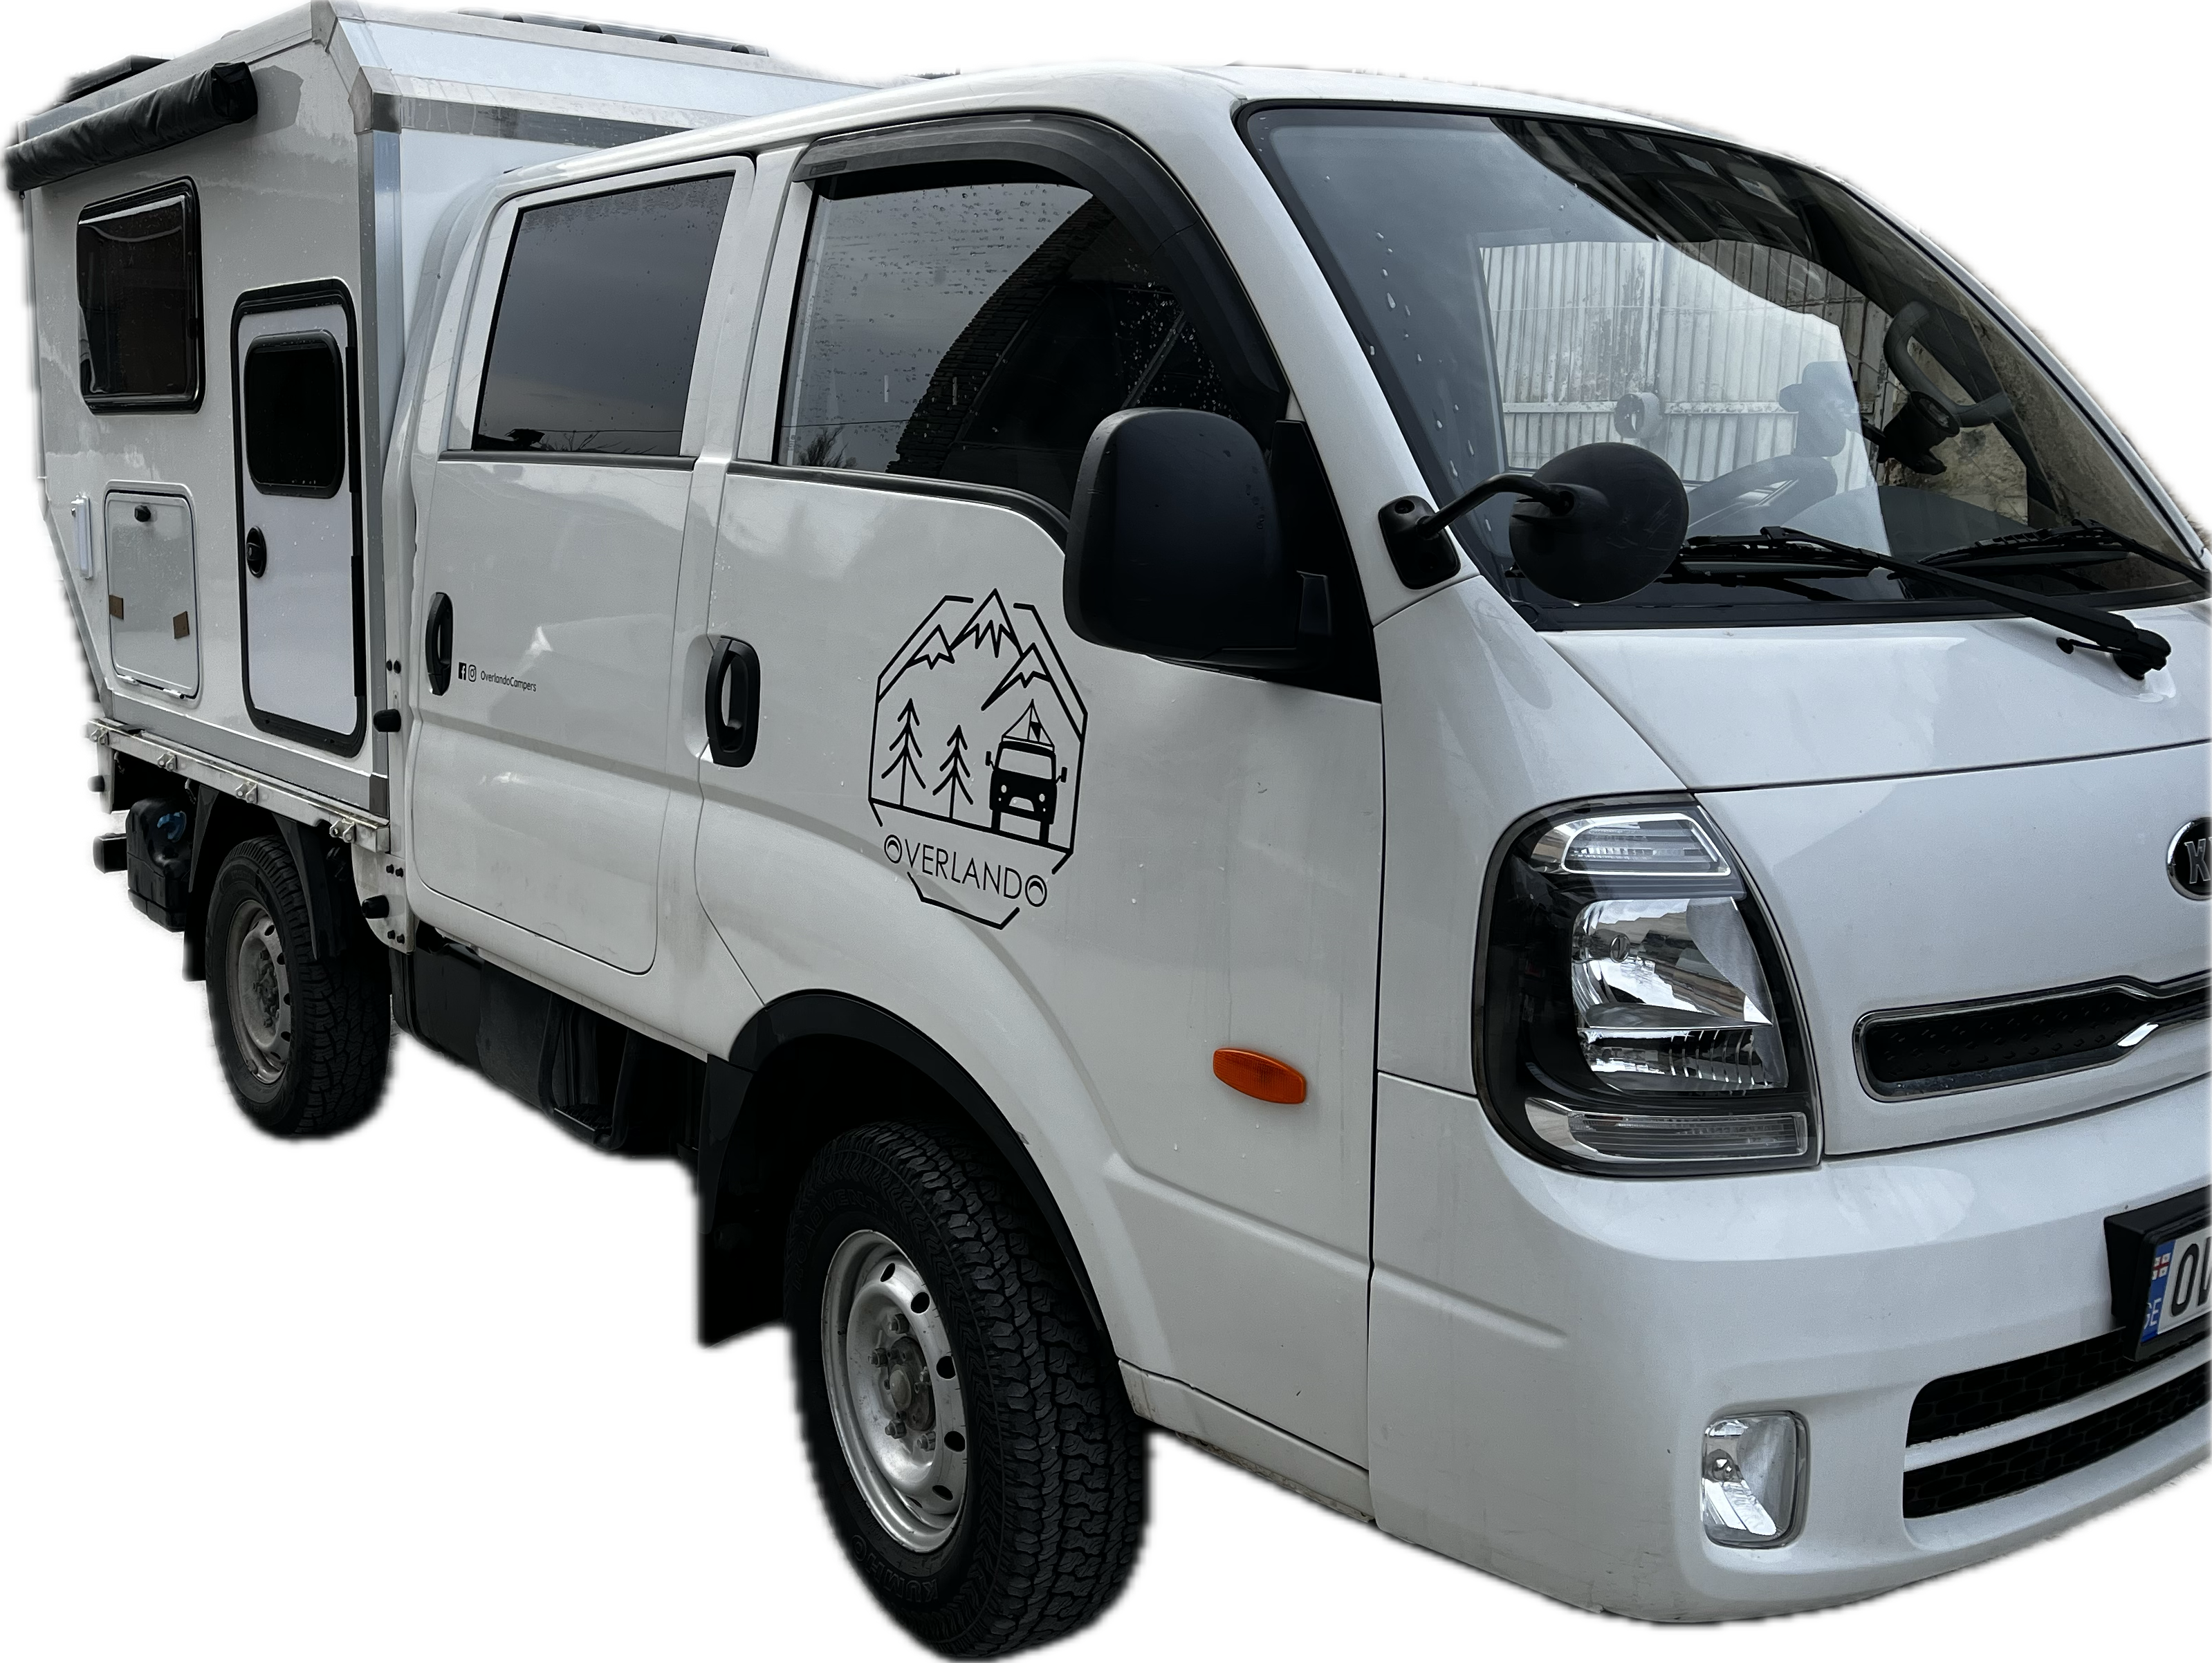 New Kia Camping Car – Kia small truck based Class B RV Van! 